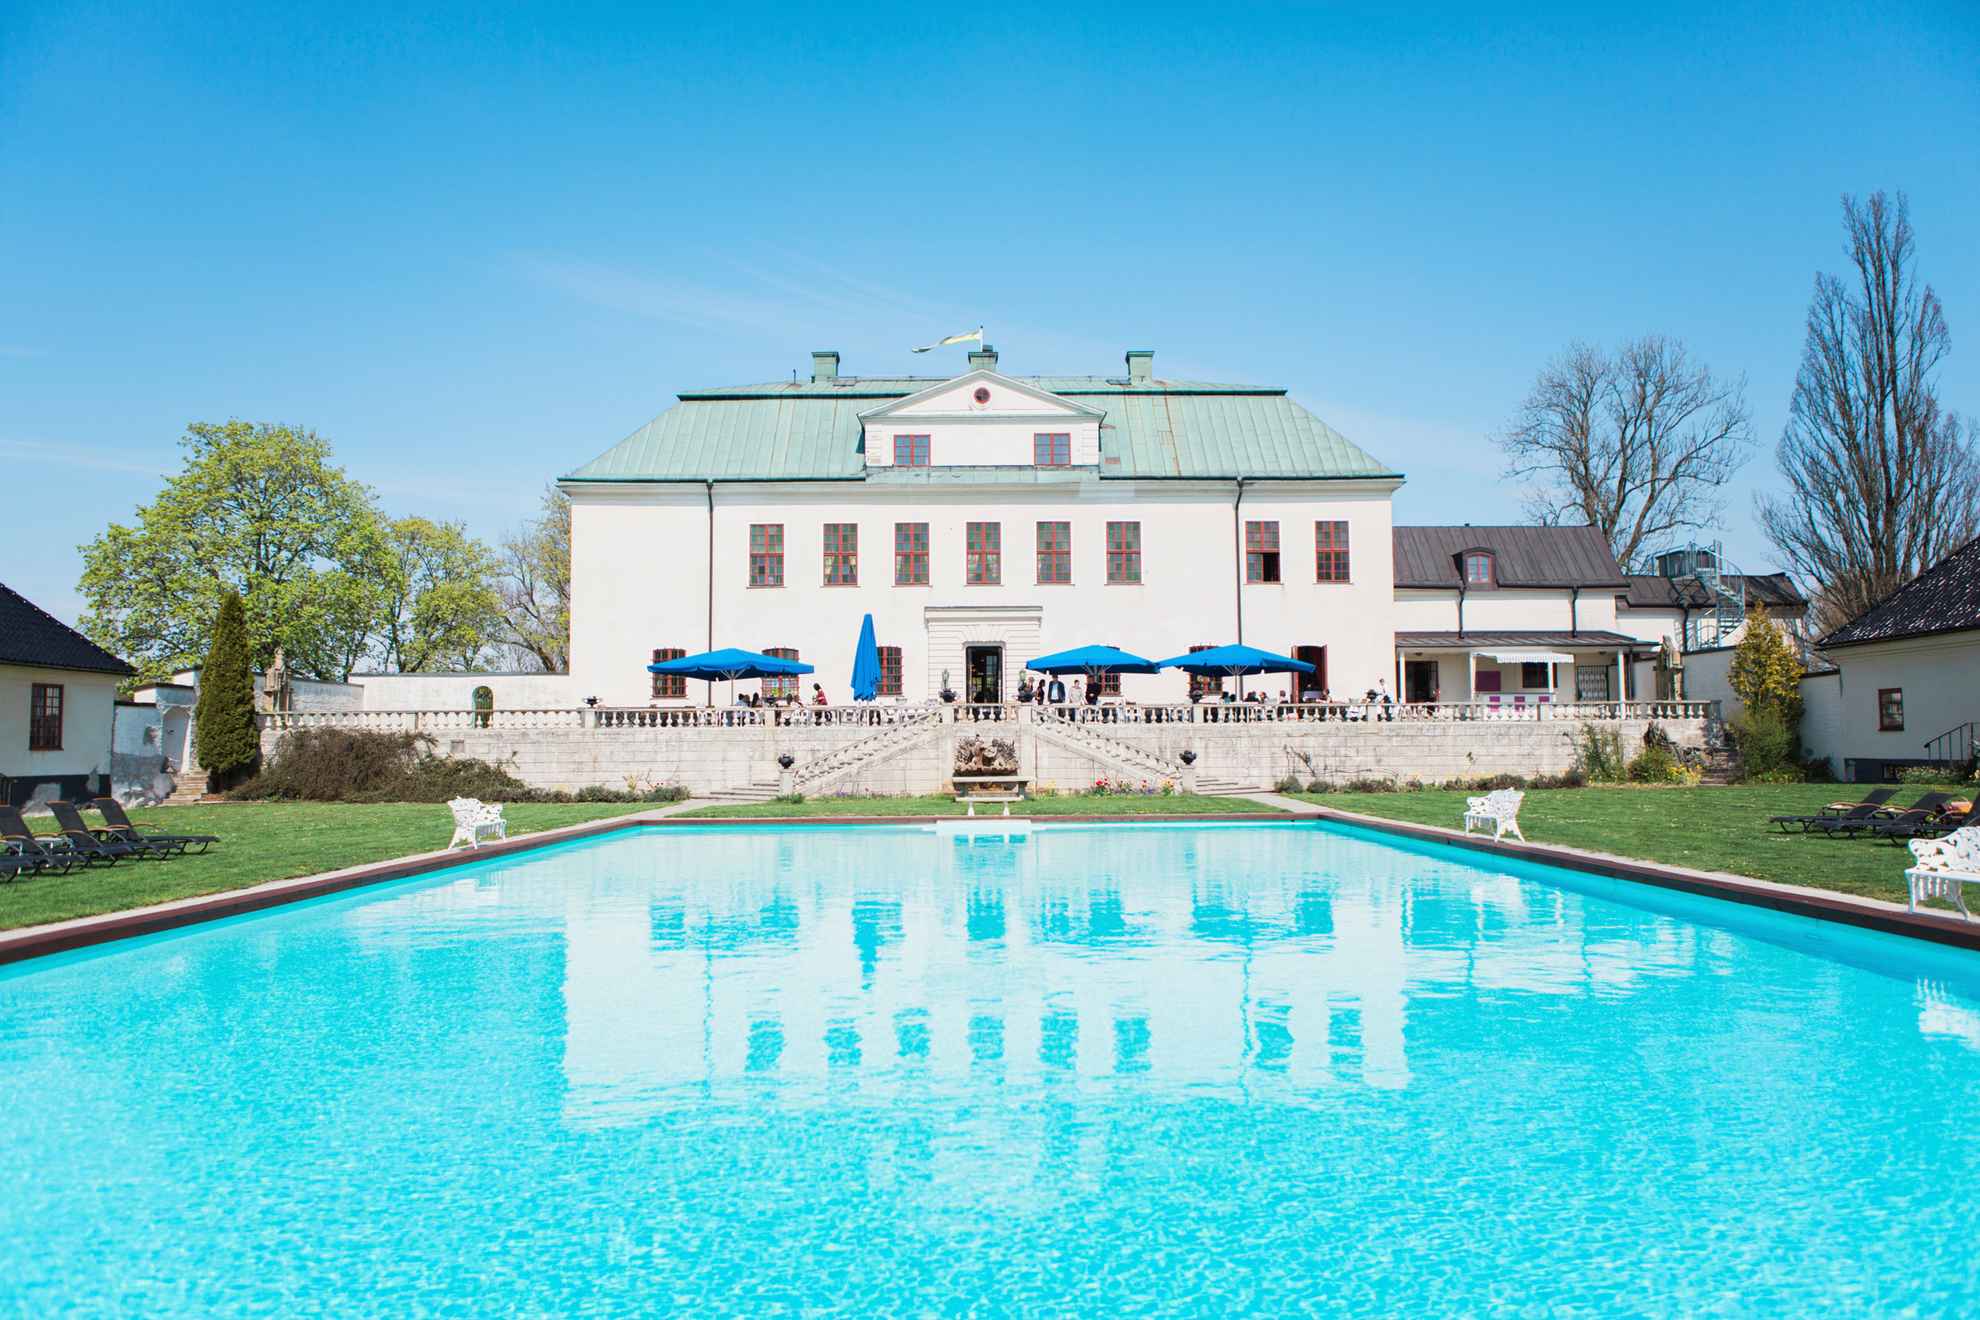 La cour arrière du château de Häringe, avec une piscine et une grande terrasse.